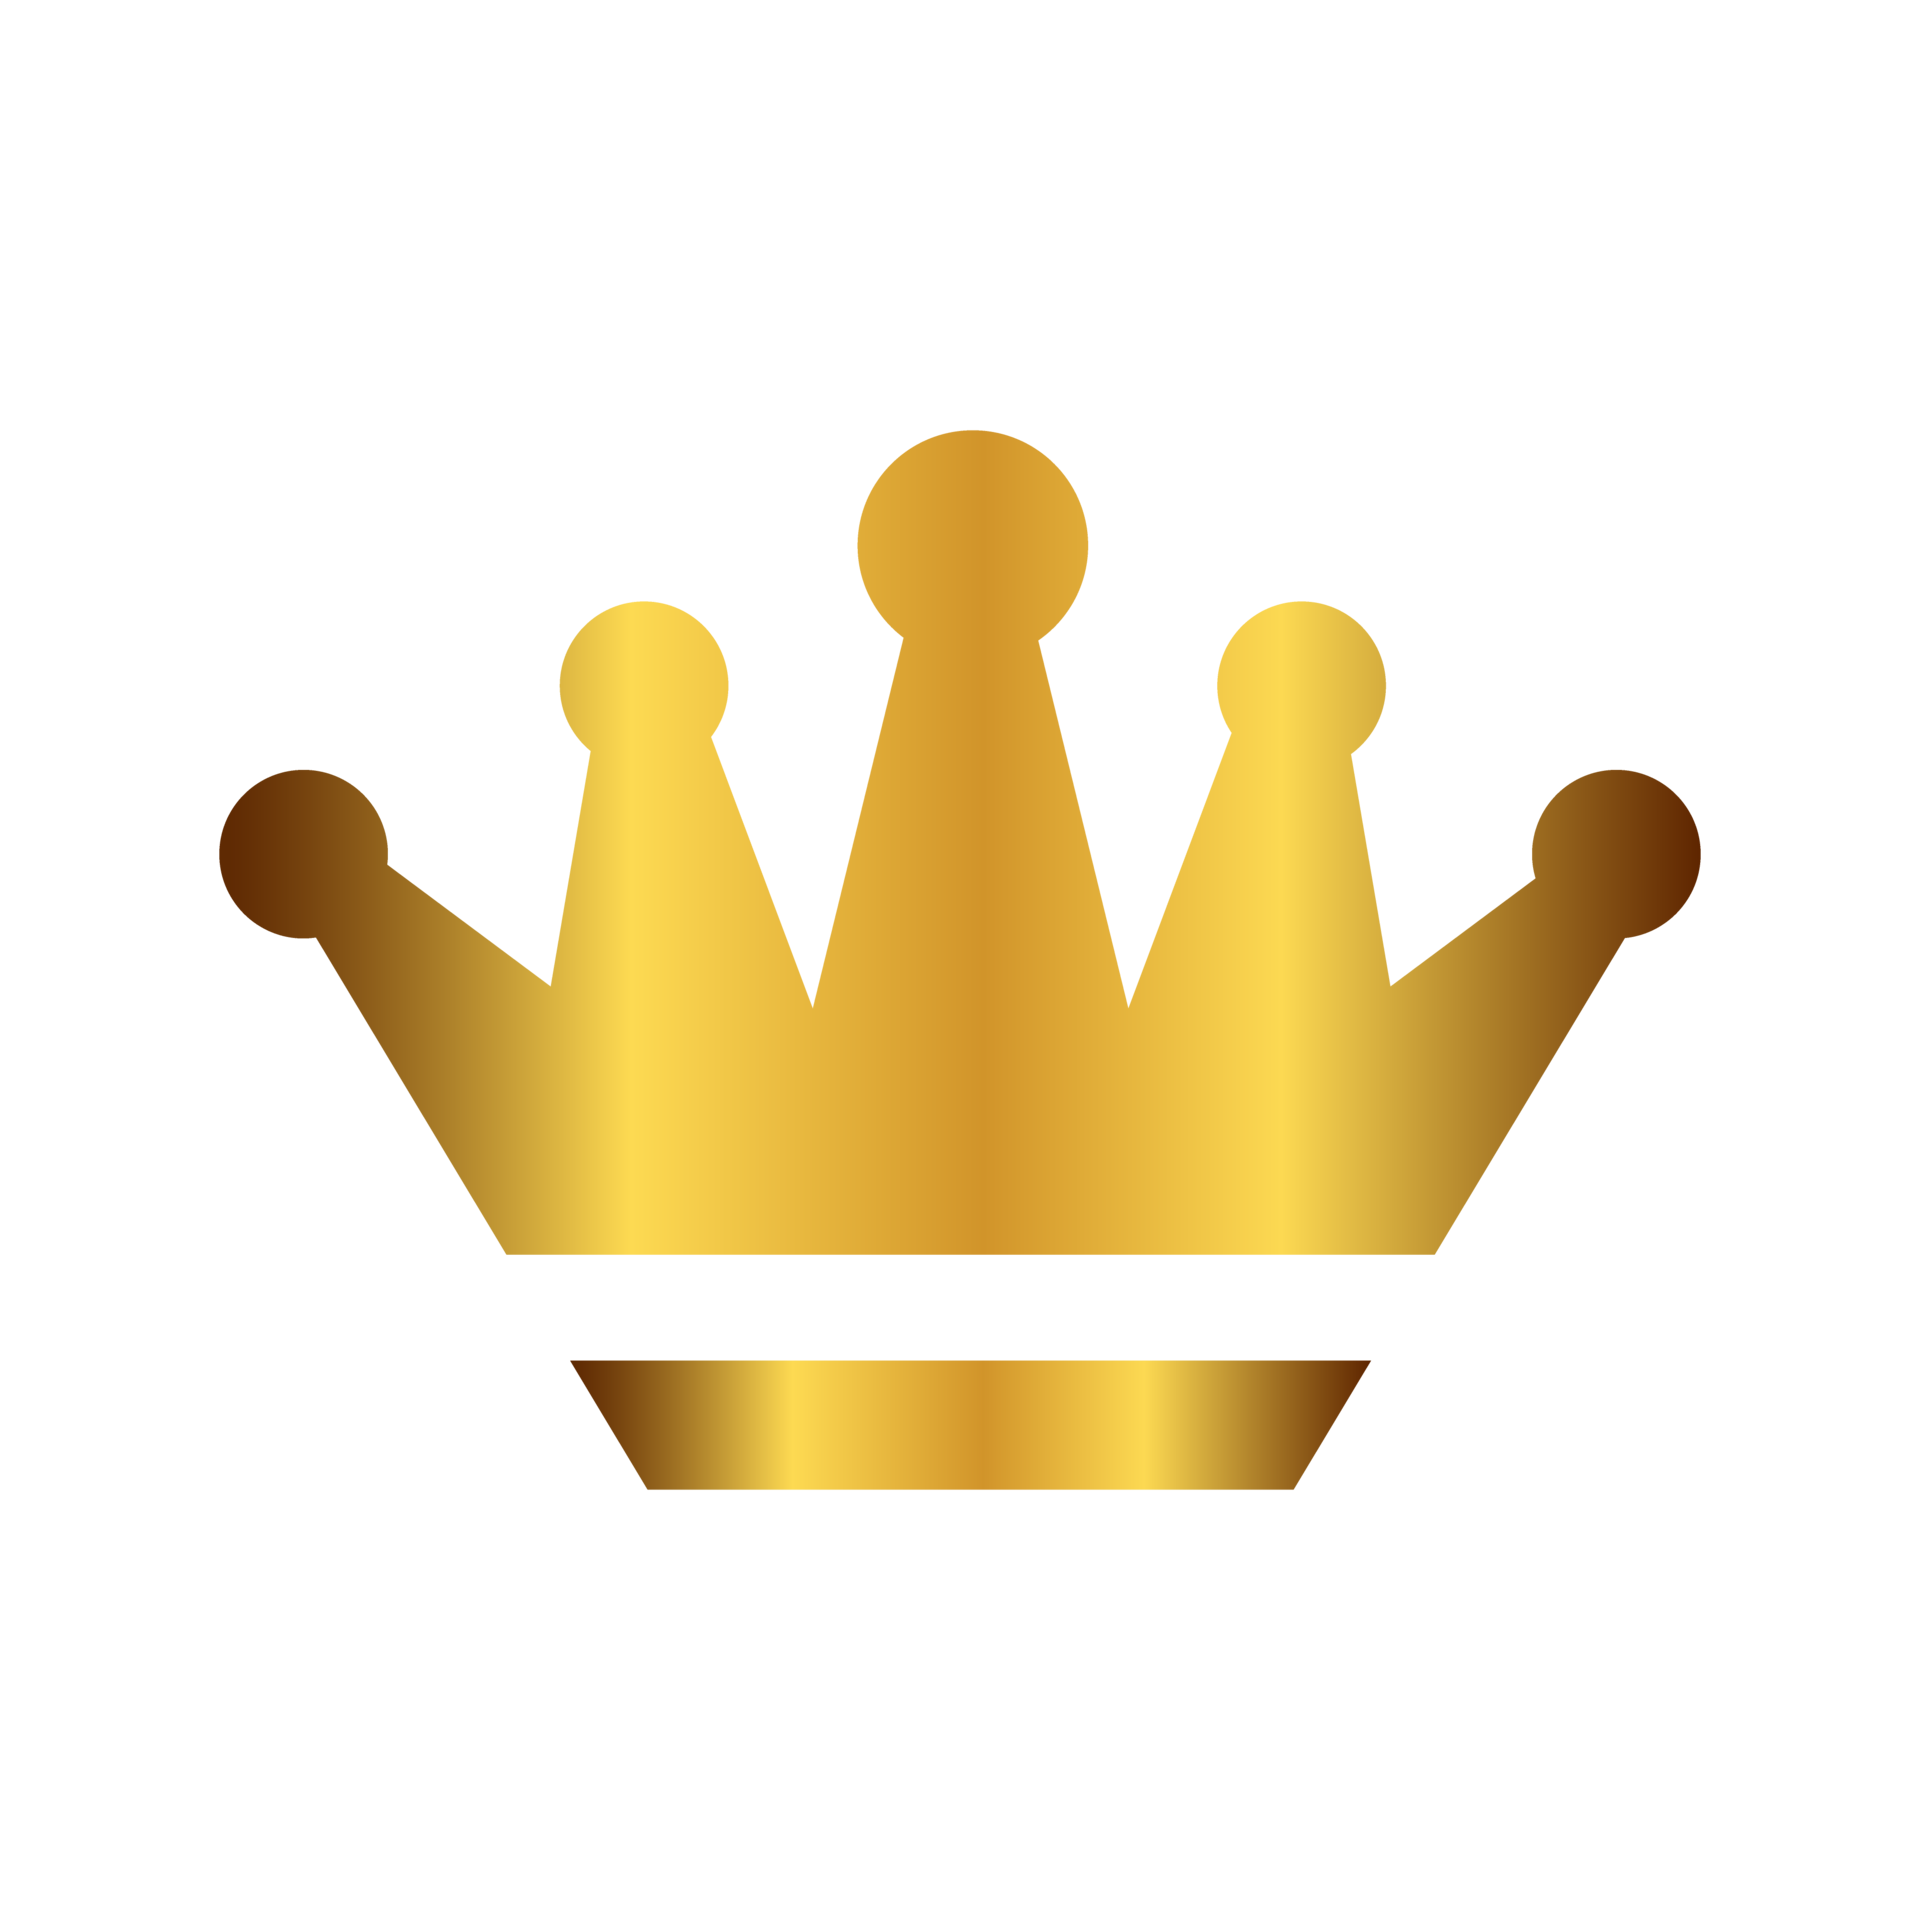 Vương miện vàng: Cảm nhận sự sang trọng và quý phái của vương miện vàng - biểu tượng gắn liền với sự quyền uy và địa vị cao trong xã hội. Với thiết kế tỉ mỉ, đính đá quý và chất liệu vàng 18K, chiếc vương miện này là món trang sức bất tử và nổi bật trong mỗi dịp lễ trọng đại.